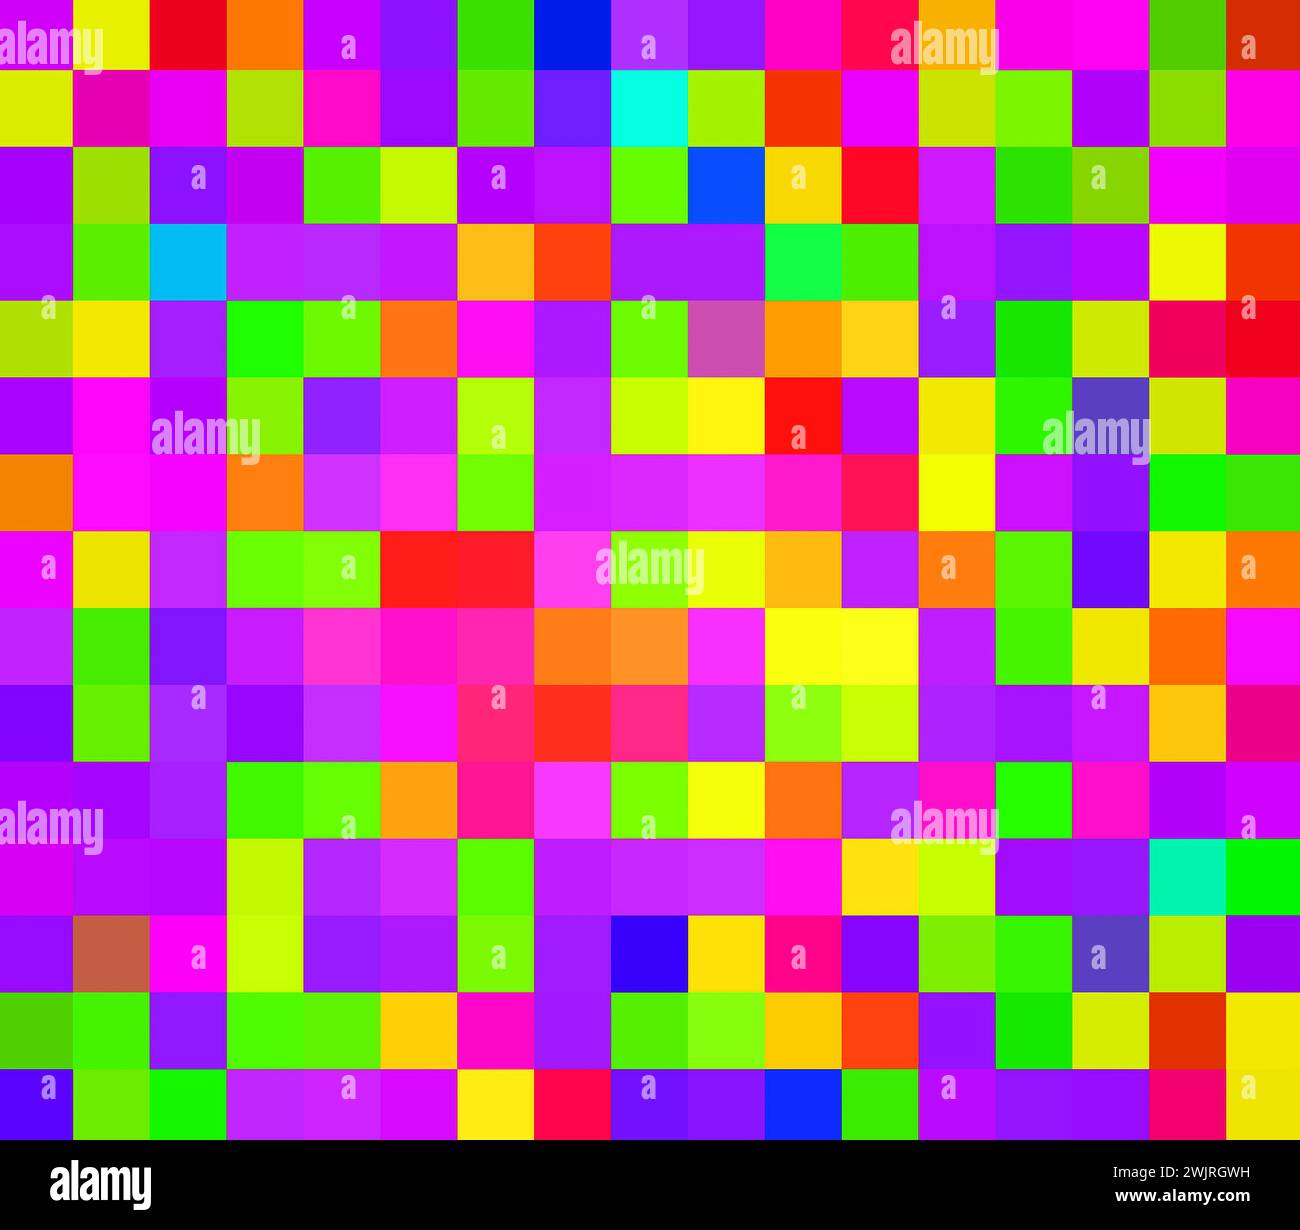 Bunte Würfel in verschiedenen Farben für Design Stockfoto